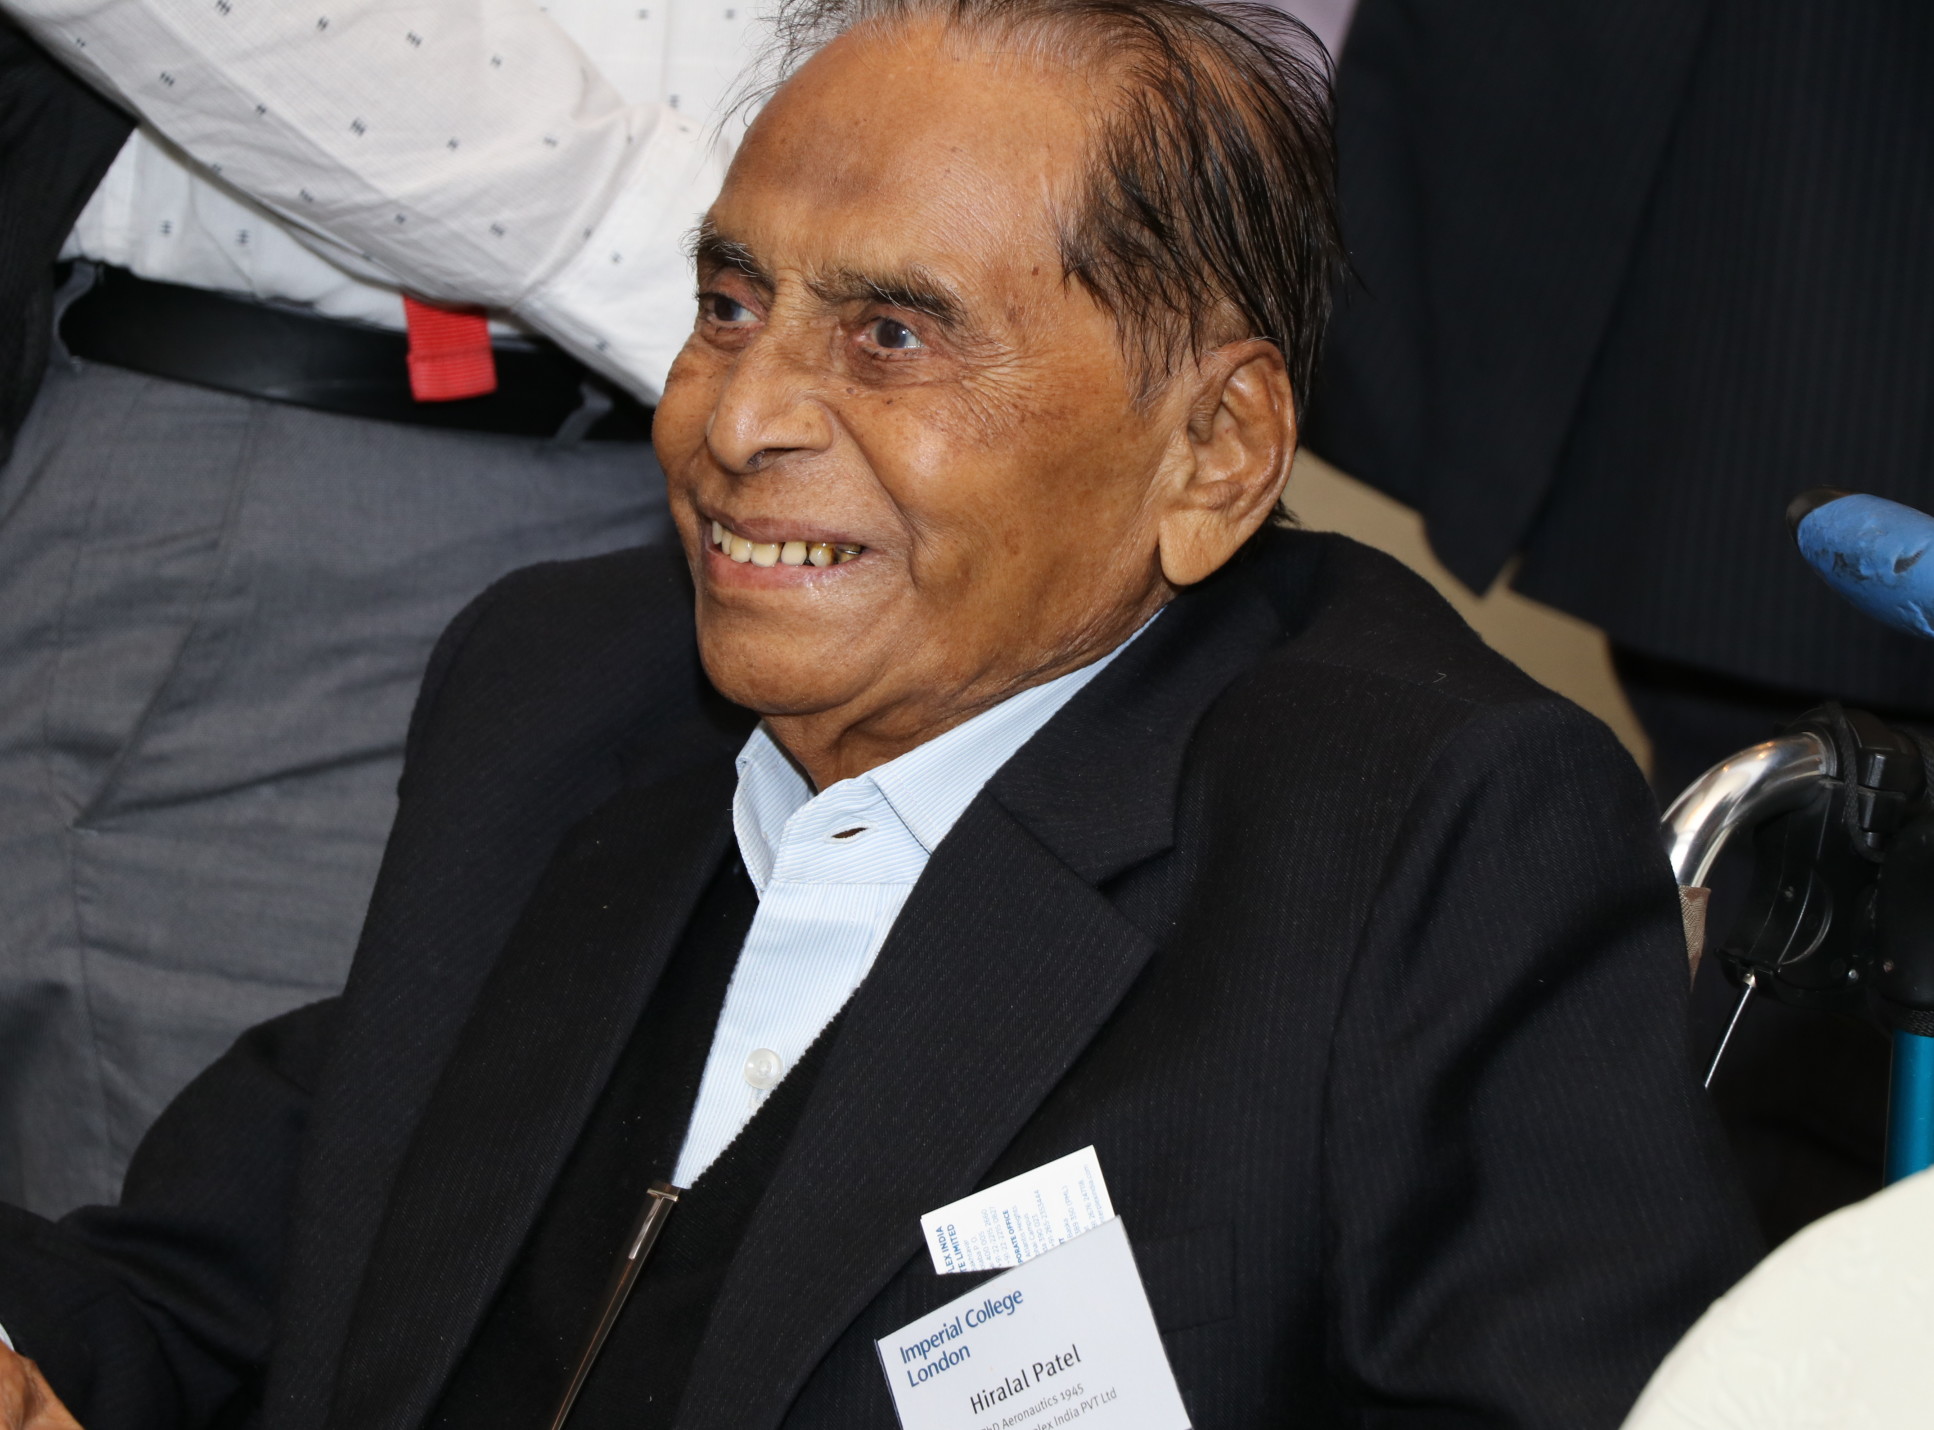 Dr Hiru Patel at an alumni event in 2018